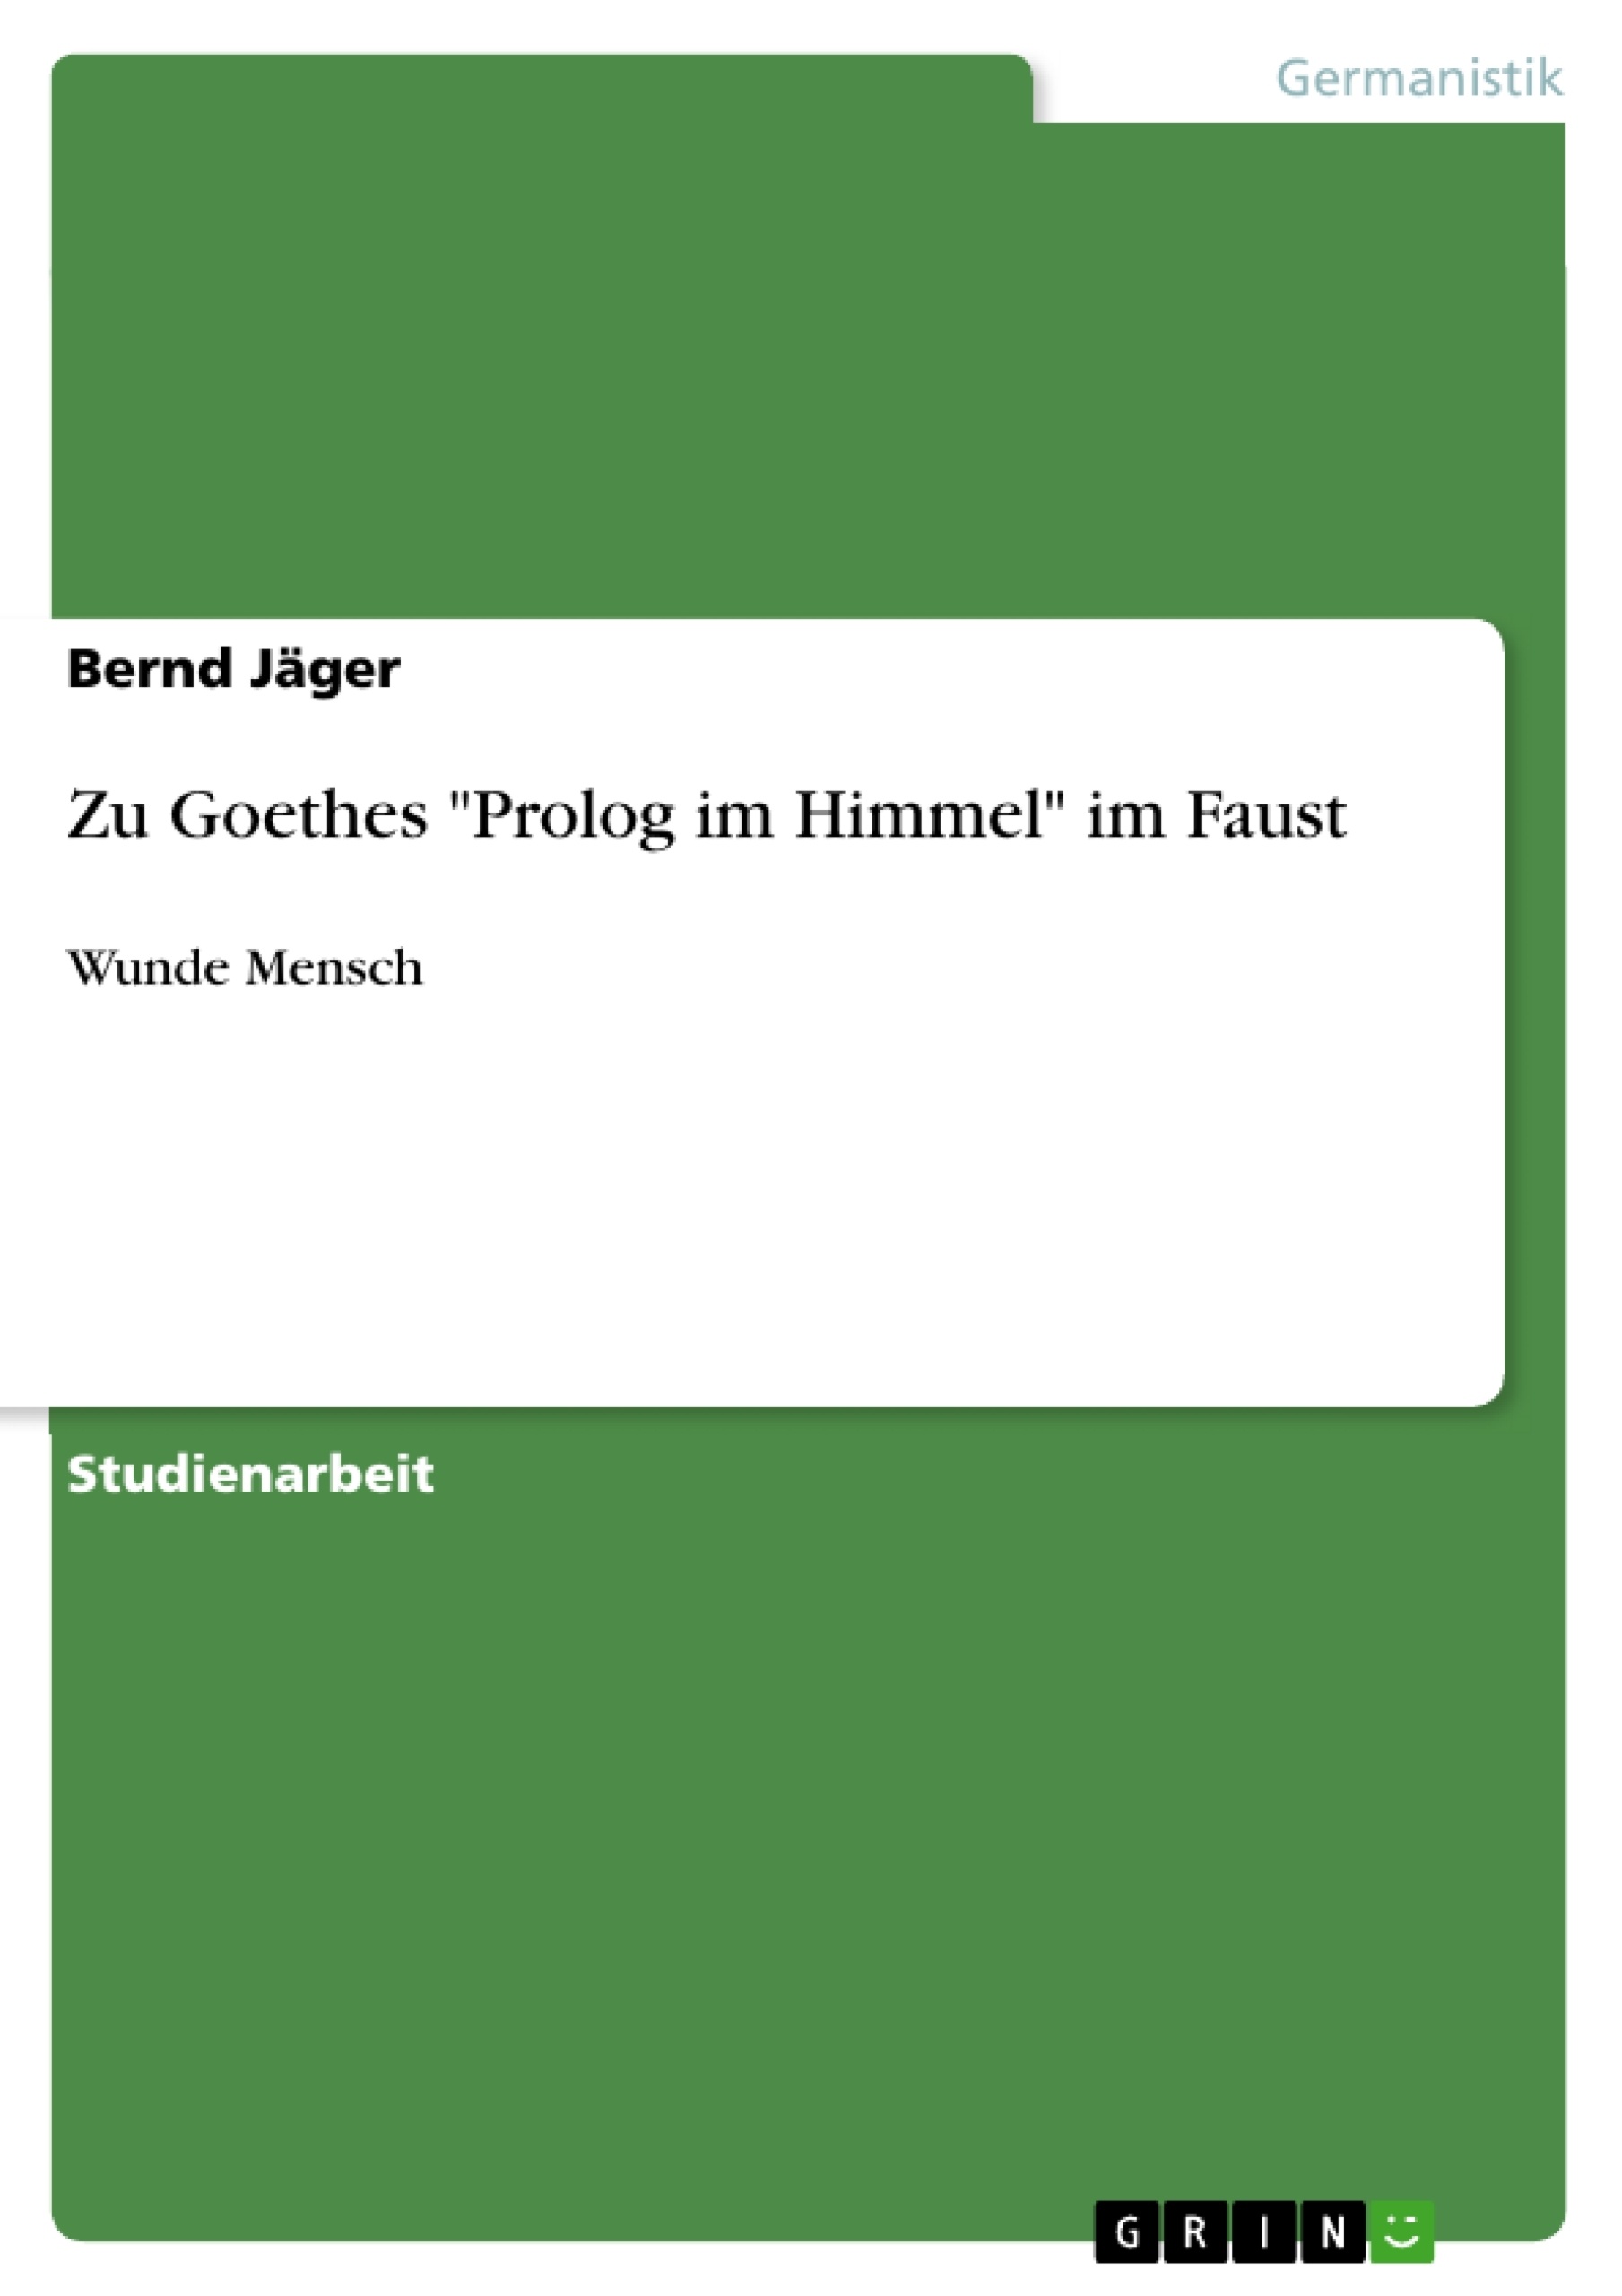 Título: Zu Goethes "Prolog im Himmel" im Faust 